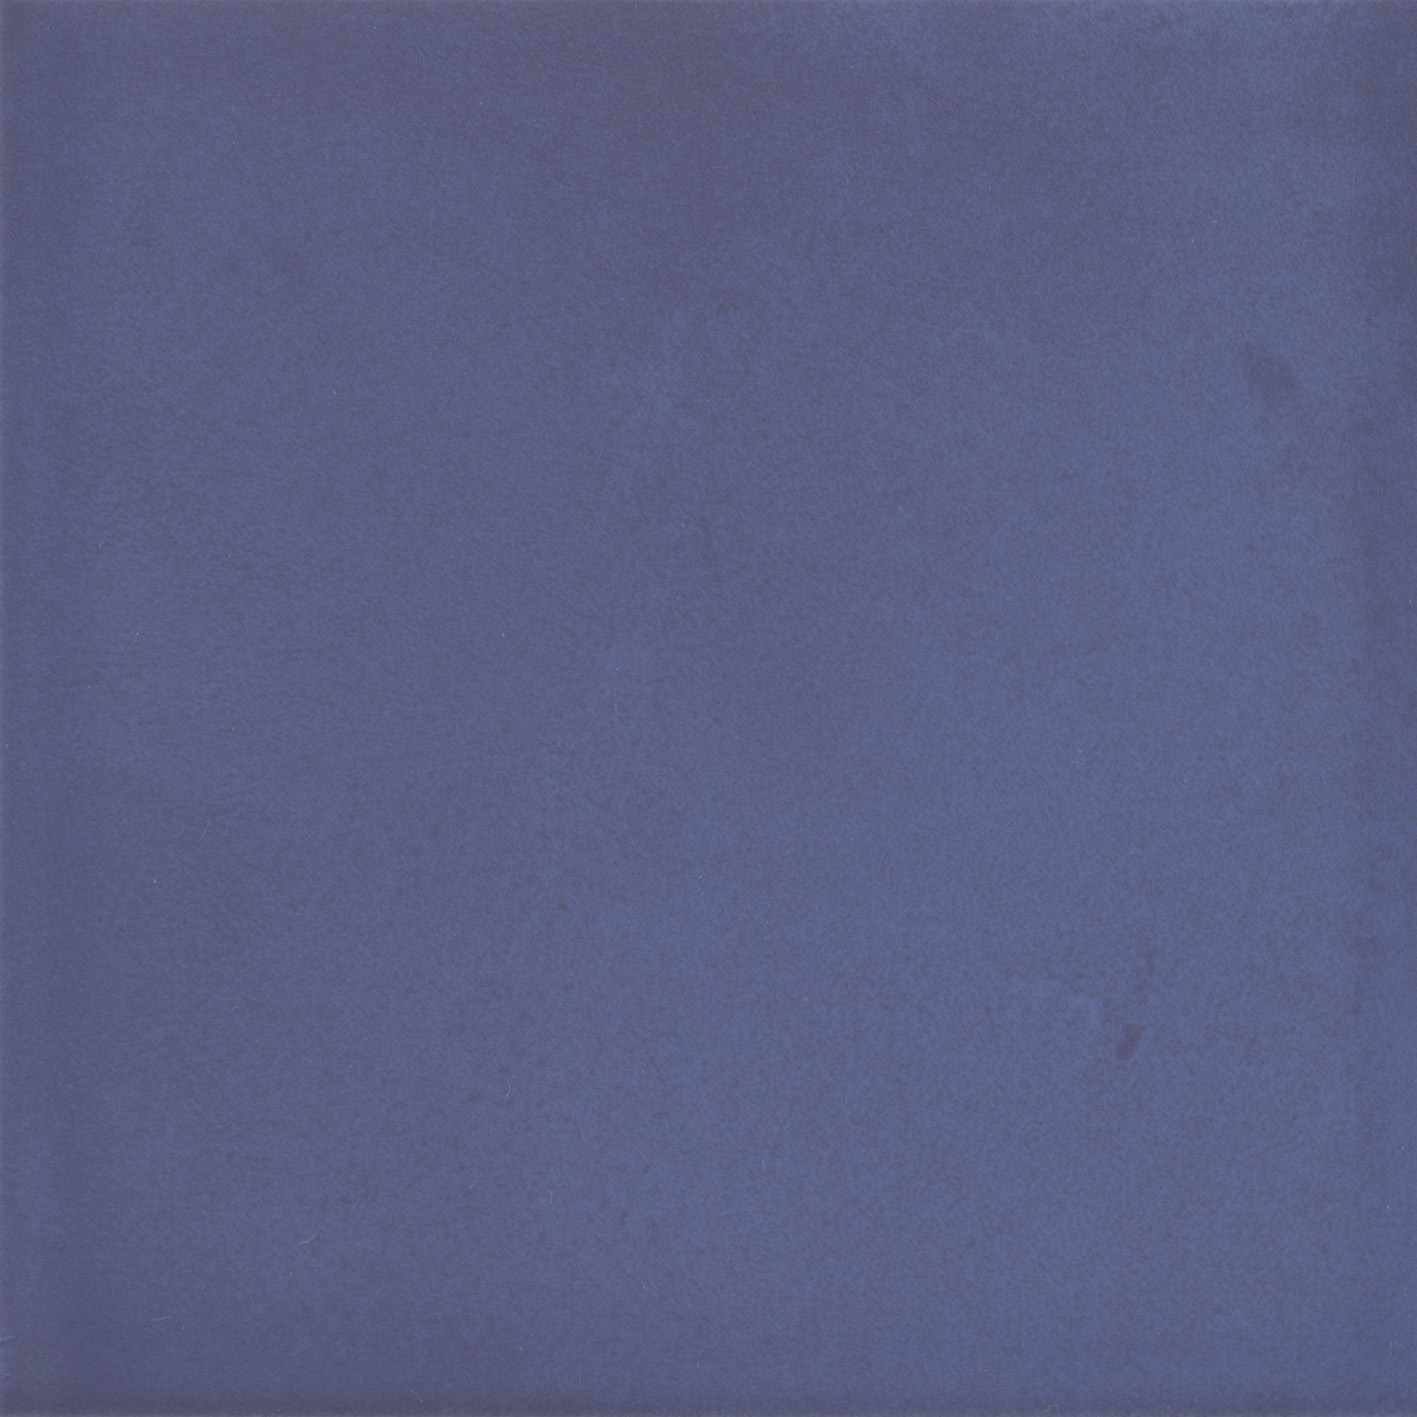 Плитка Kerama Marazzi Витраж синий 17065 15x15 см плитка облицовочная нефрит террацио белая с крошкой 600x200x9 мм 10 шт 1 2 кв м